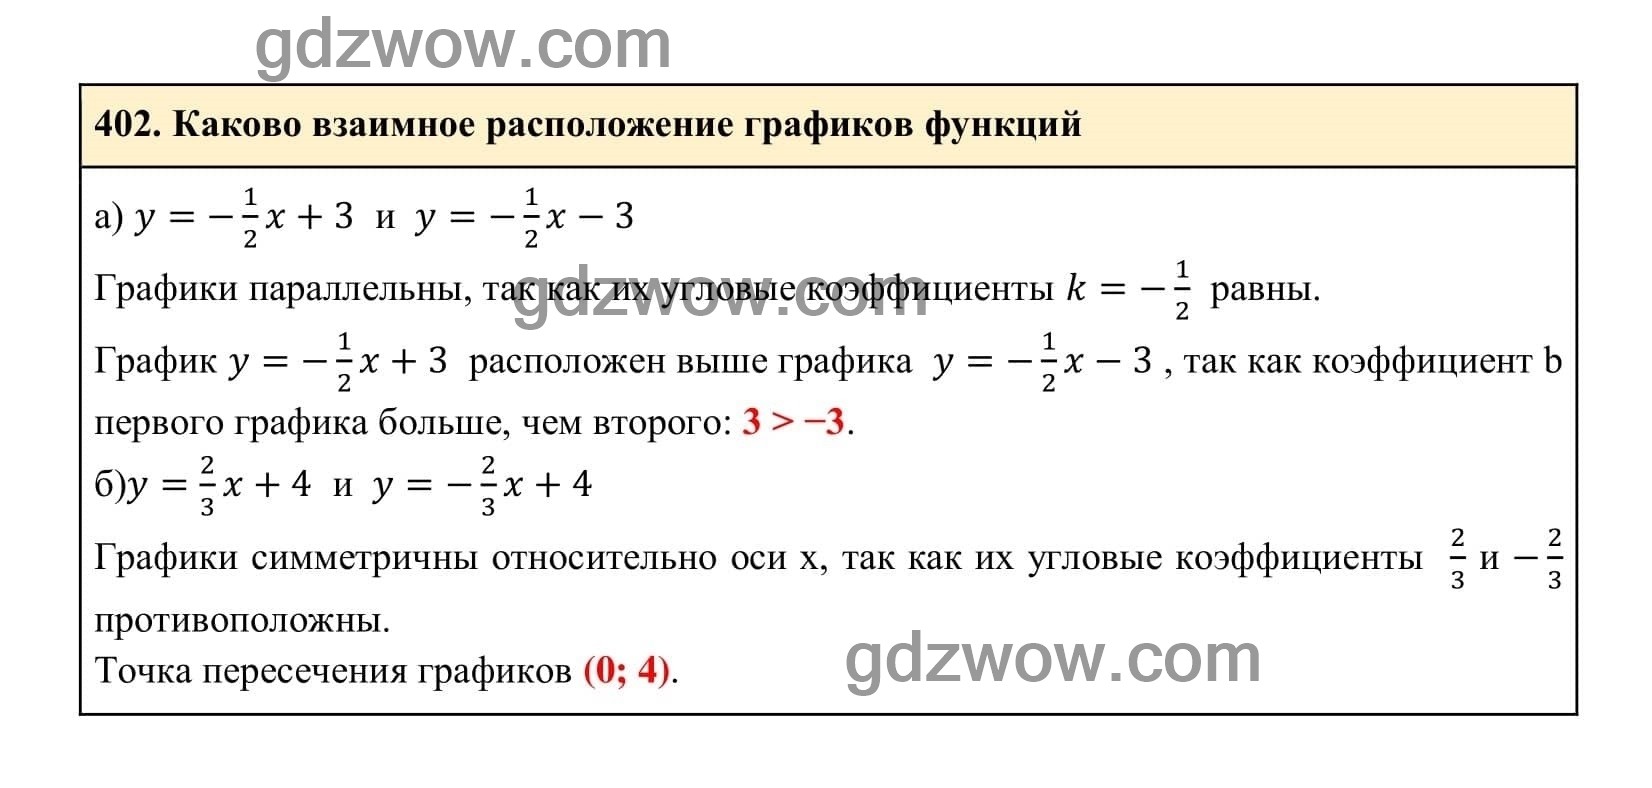 Упражнение 402 - ГДЗ по Алгебре 7 класс Учебник Макарычев (решебник) - GDZwow